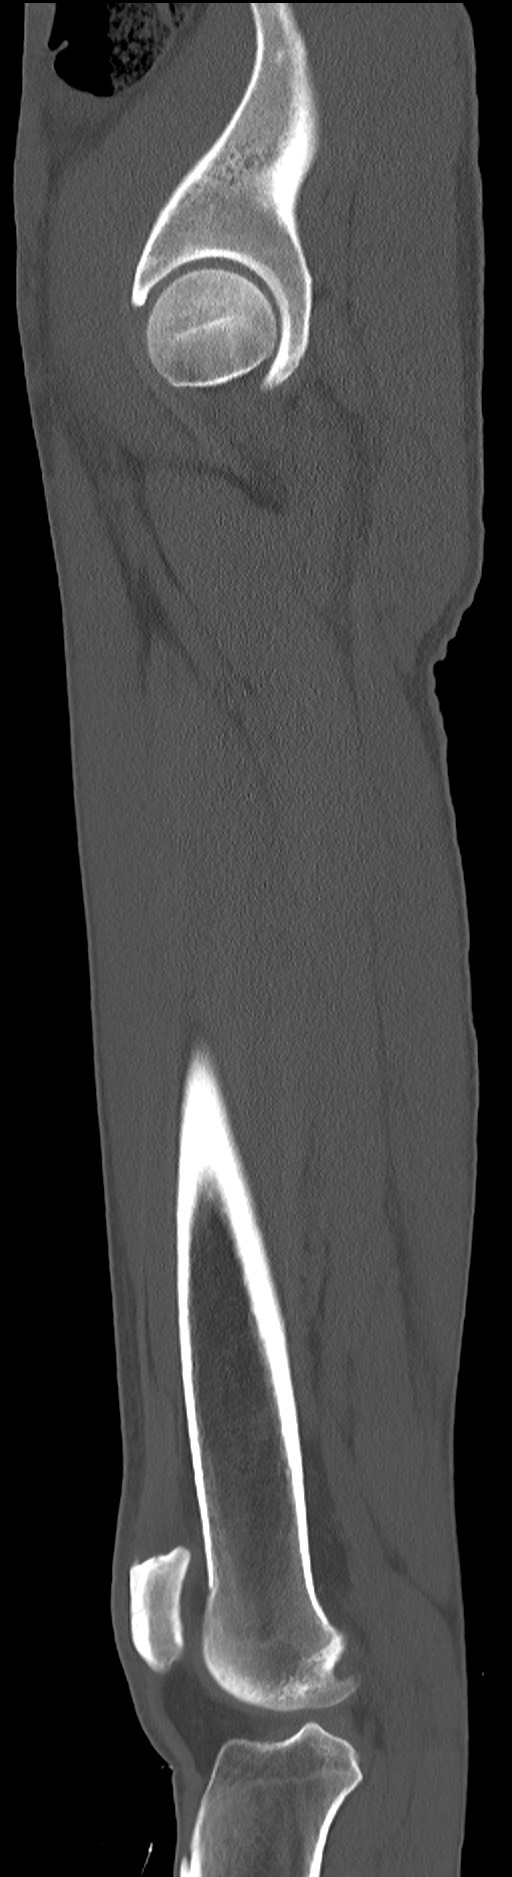 Chronic osteomyelitis (with sequestrum) (Radiopaedia 74813-85822 C 32).jpg